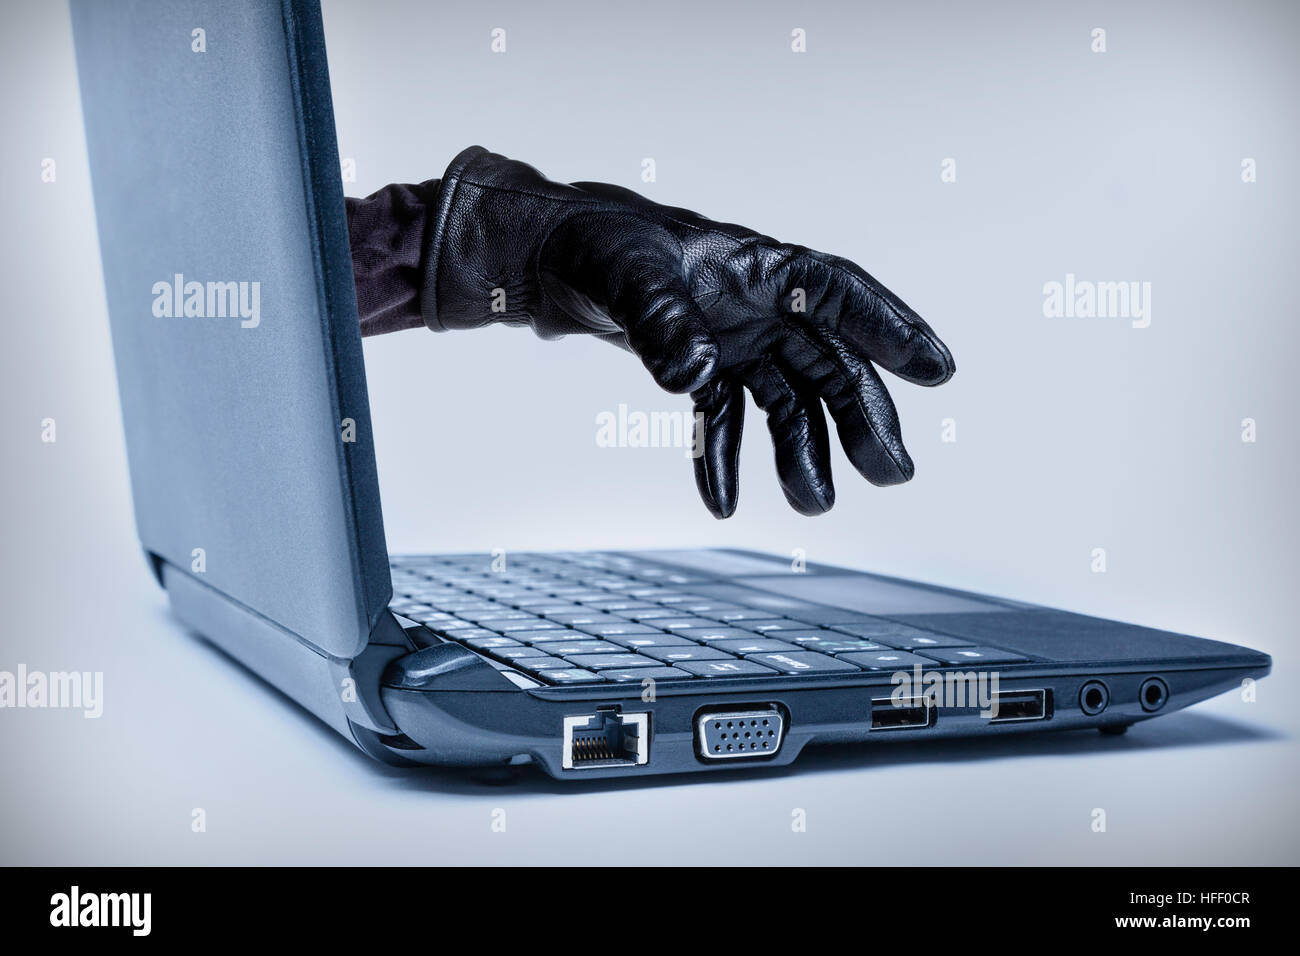 Eine behandschuhte Hand erreichen durch einen Laptop, bedeutet ein Cybercrime oder Internet Diebstahl während der Verwendung von Internet-Medien. Stockfoto